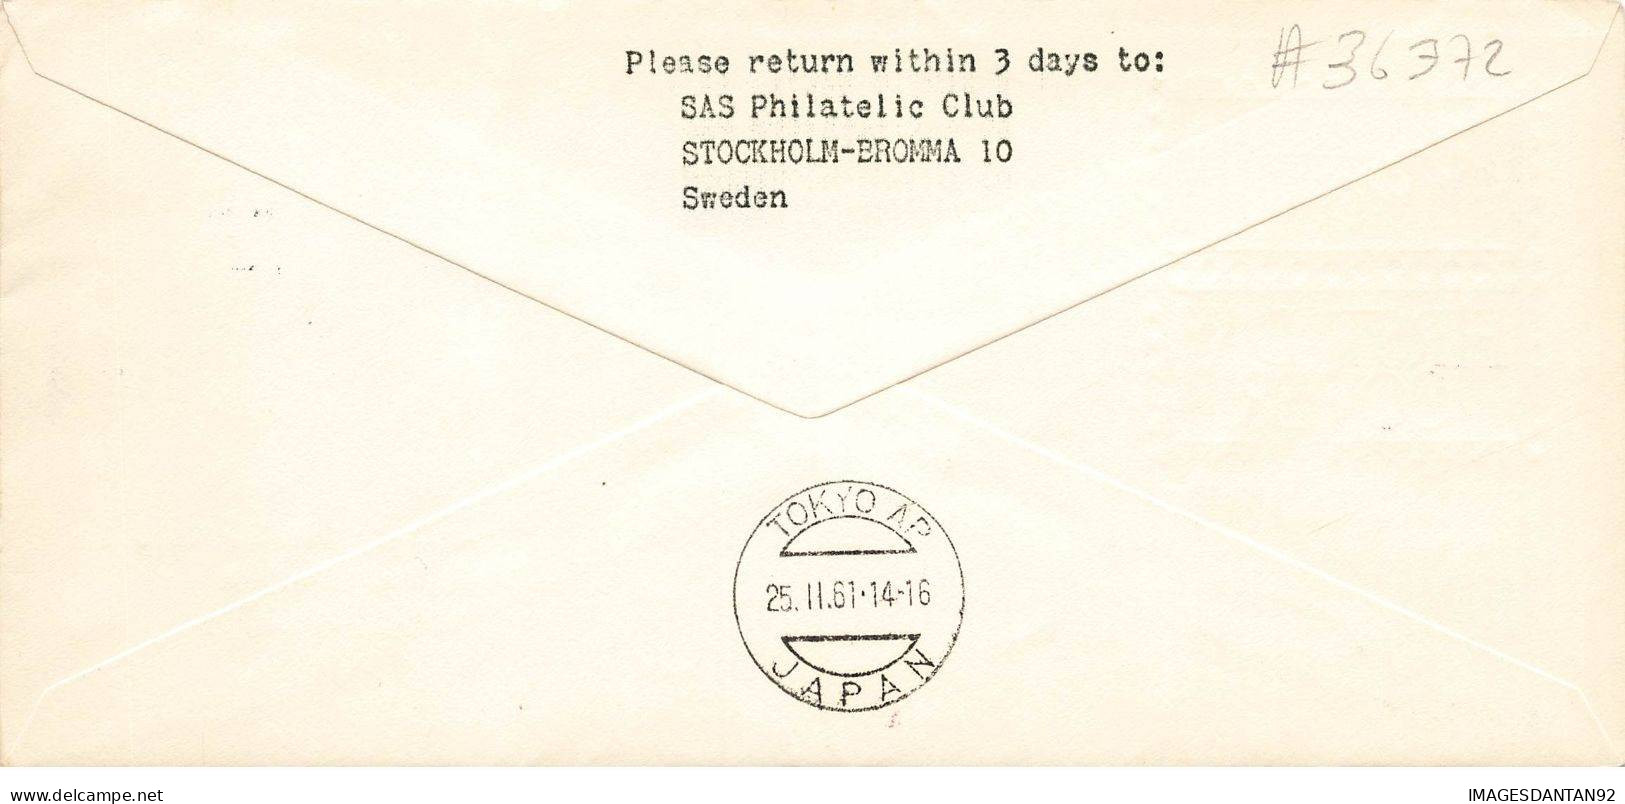 SUEDE #36372 FIRST DAY COVER SCANDINAVIAN SAS STOCKHOLM TOKYO 1961 - Cartas & Documentos